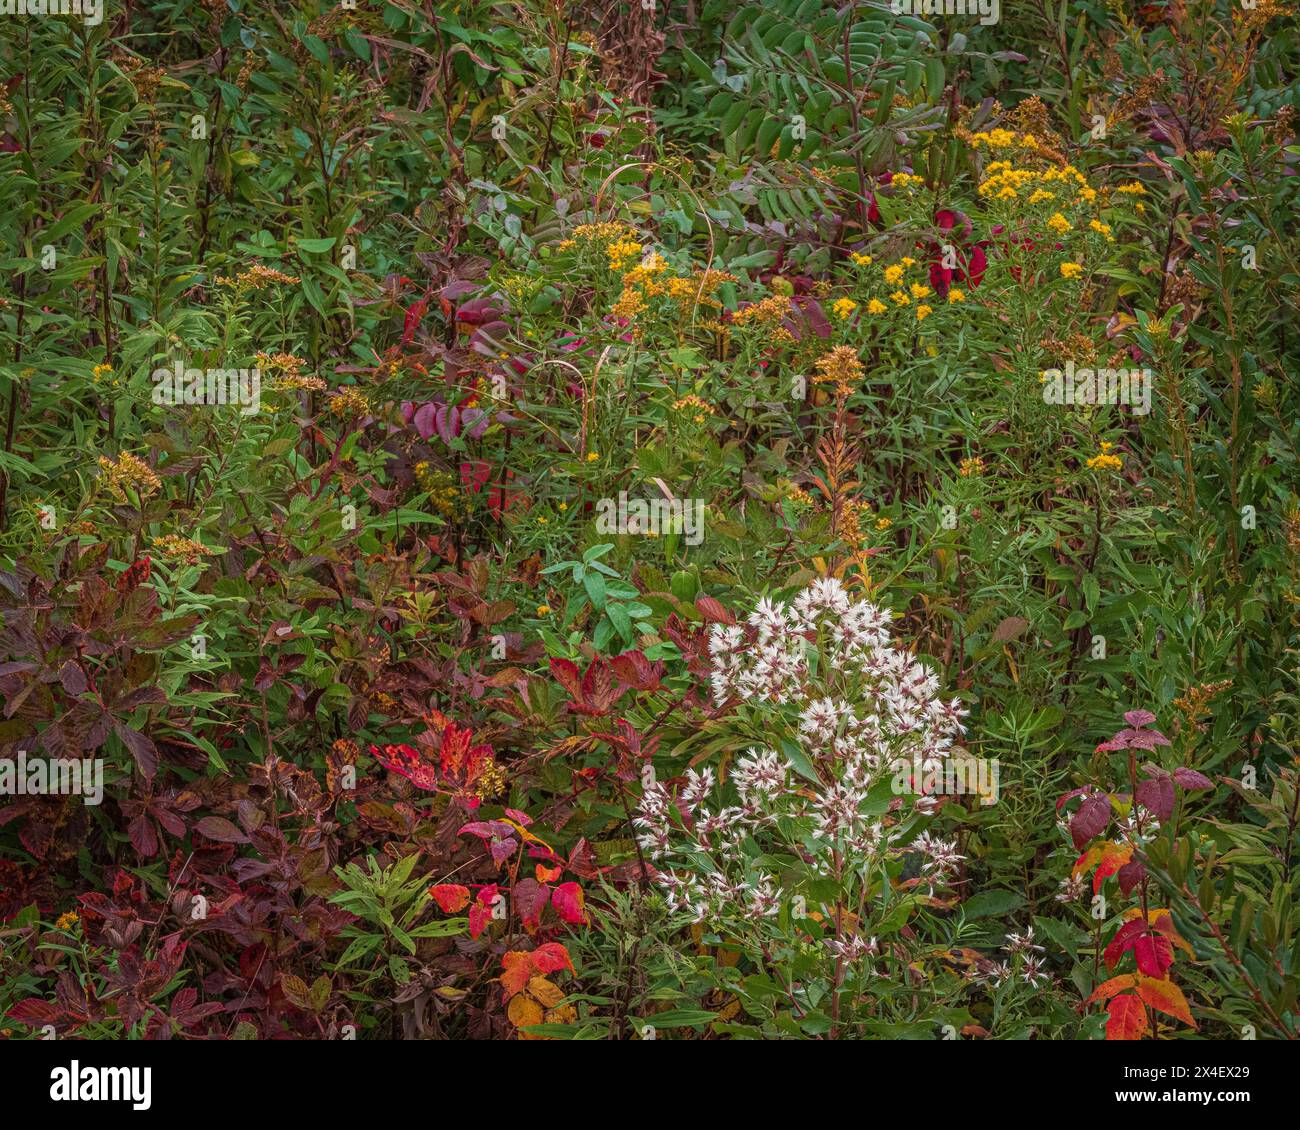 USA, New Jersey, Cape May National Seashore. Herbstblumen und Laub landschaftlich reizvoll. Stockfoto